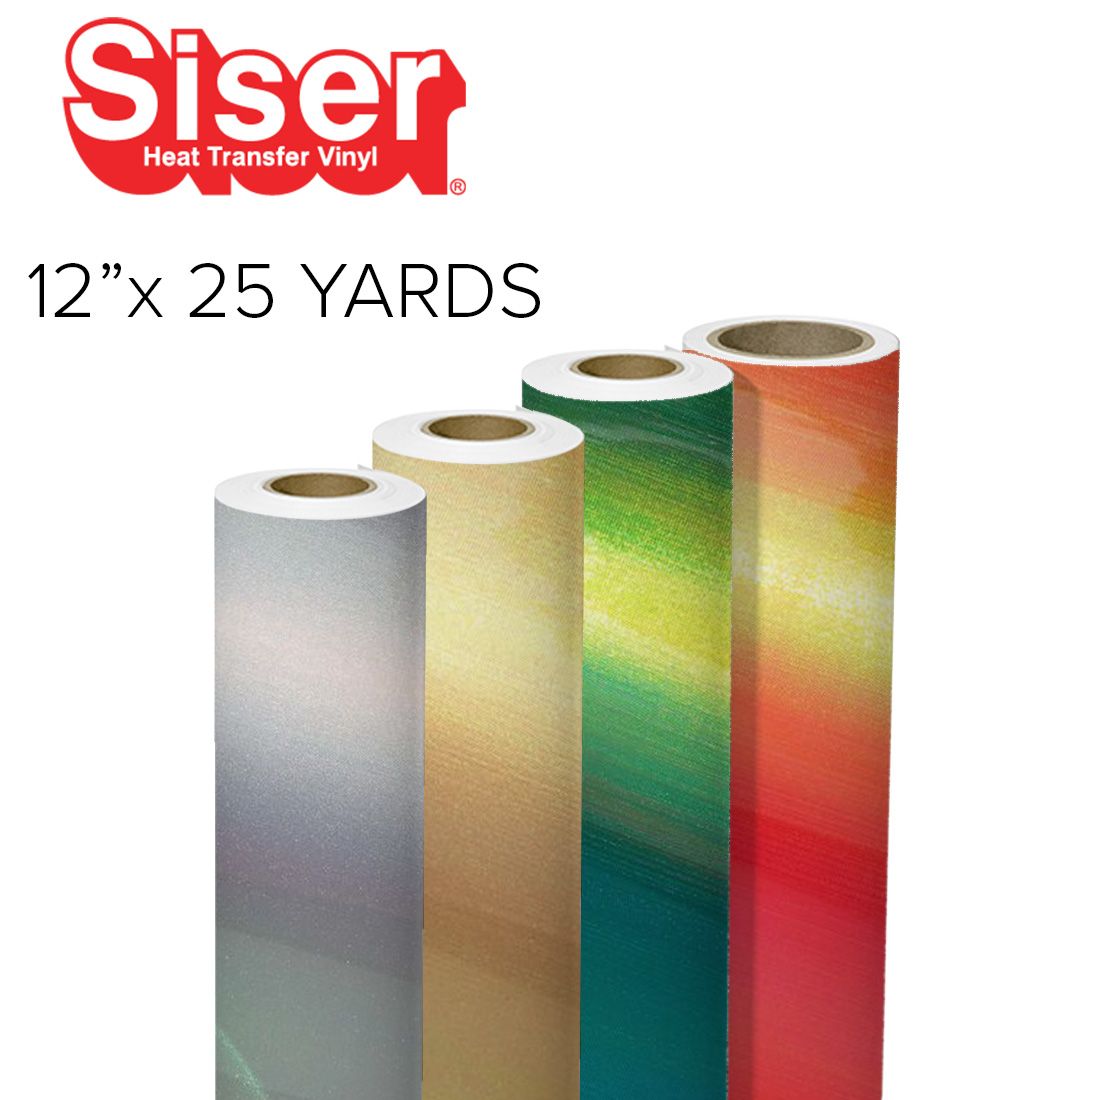 Siser EasyWeed Heat Transfer Vinyl - 12 x 25 yards